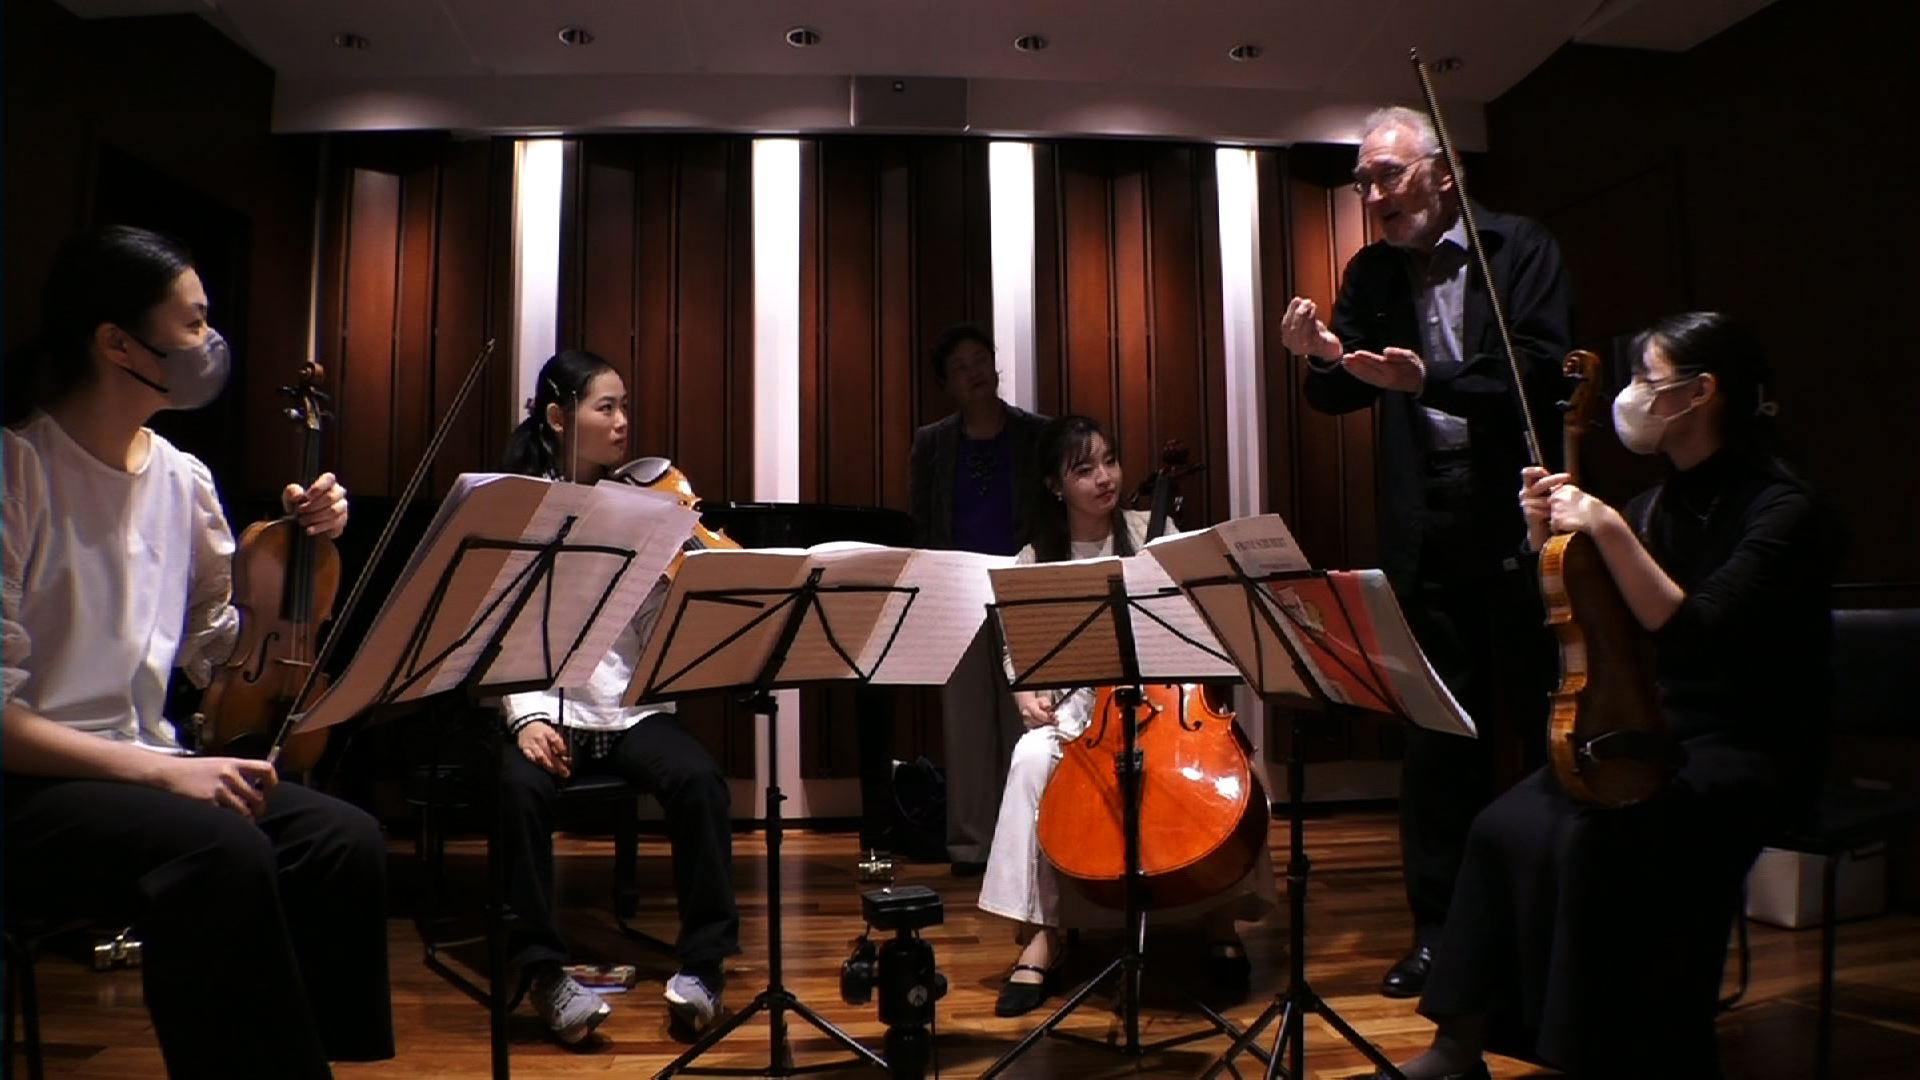 プロジェクトQ　マスタークラス  第21章 若いクァルテット、シューベルトに挑戦する  講師:ジュリアード弦楽四重奏団    クァルテット・テネラメンテ  ルシェリア・クァルテット  クァルテット・アンジェリカ  クァルテット・フェリーチェ  クァルテット・プリマヴェーラ    <span>ProjectQ Masterclass  Juilliard String Quartet  </span>